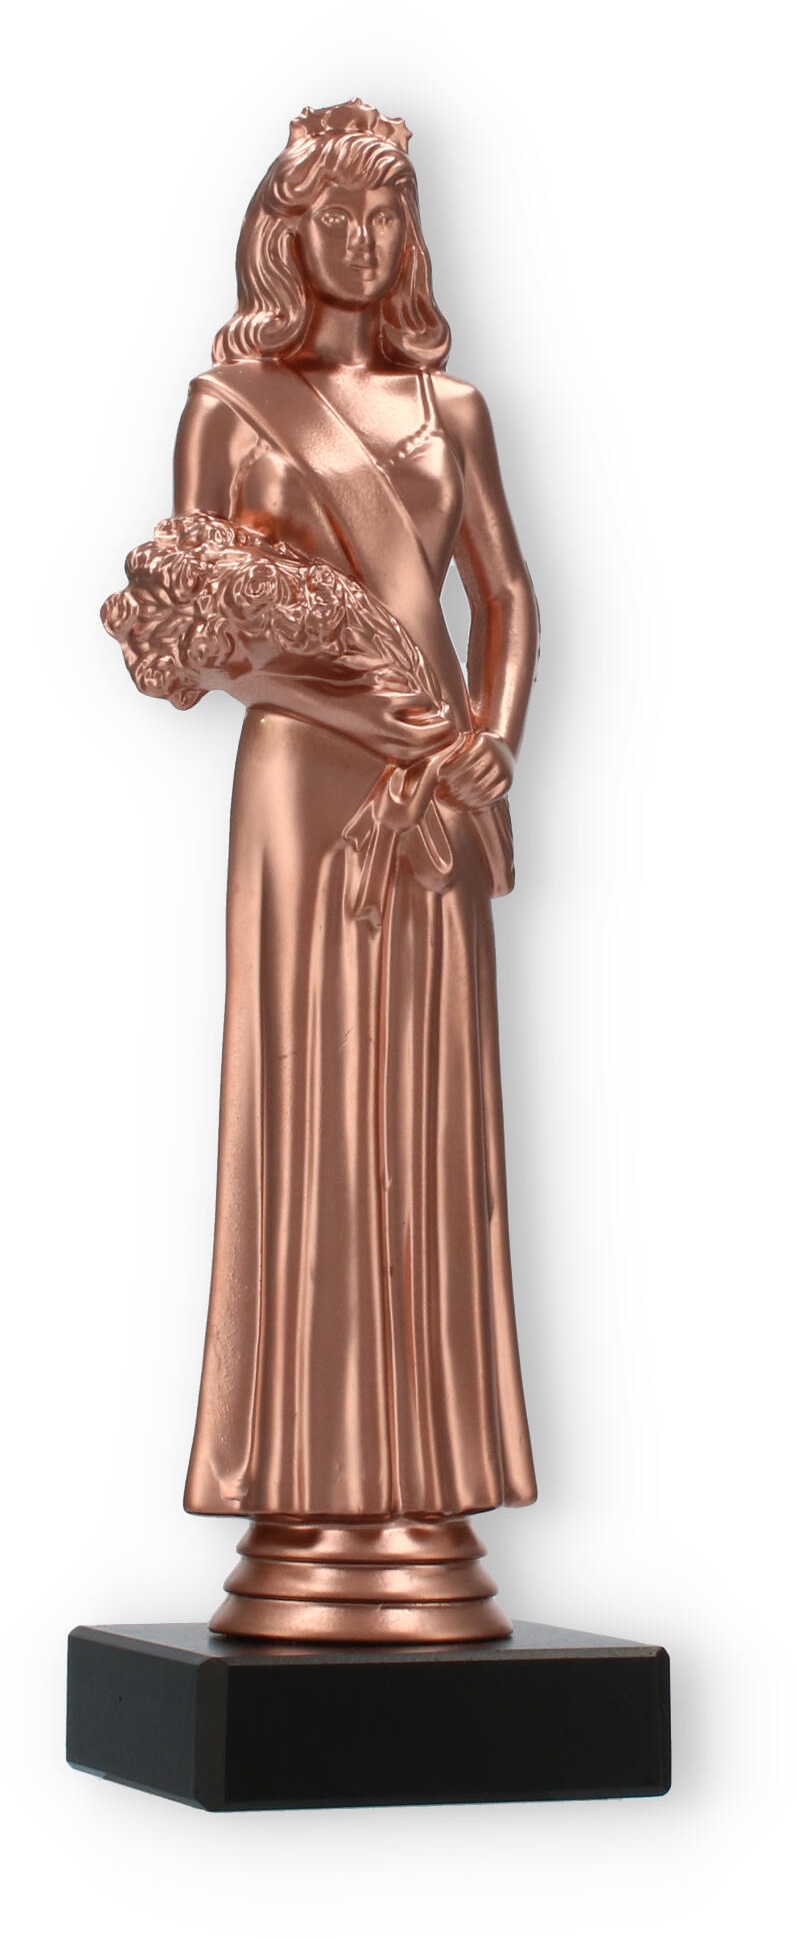 Pokal Kunststofffigur Schönheitskönigin bronze auf schwarzem Marmorsockel 22,7cm